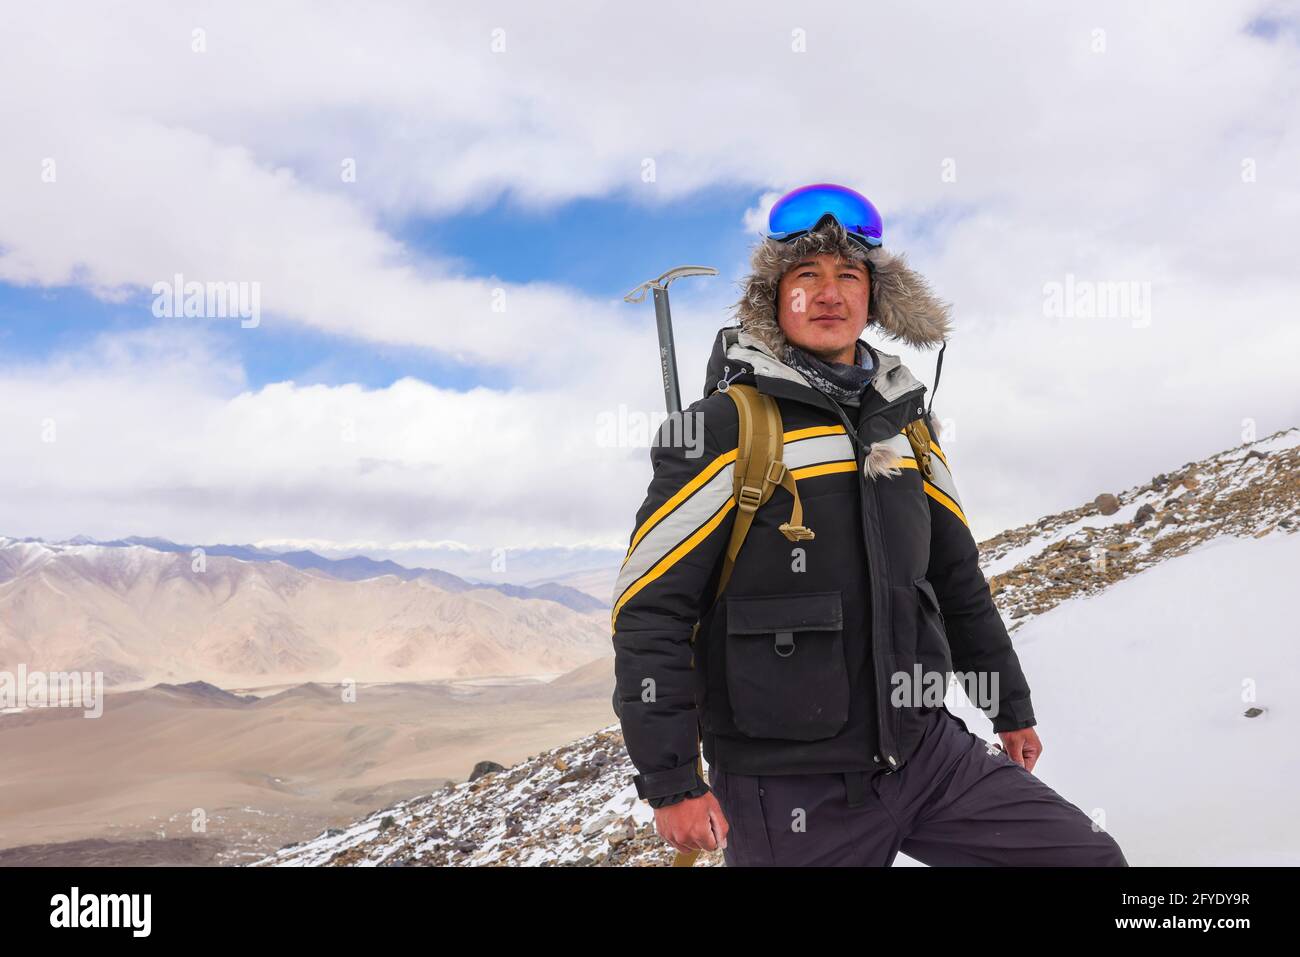 (210528) -- URUMQI, 28 maggio 2021 (Xinhua) -- Foto scattata il 15 maggio 2021 mostra un ritratto di Bikmirza Turdil sulla Muztagh ATA nella regione autonoma Xinjiang Uygur della Cina nord-occidentale. Bikmirza, un pastore di 24 anni di Kirghiz, è nato e cresciuto ai piedi del Muztagh ATA, una vetta con un'altitudine di oltre 7,500 metri, nei Pamirs della regione autonoma cinese Xinjiang Uygur. Ha iniziato a lavorare come guida per aiutare gli scalatori a trasportare attrezzature e forniture all'età di 18 anni. Arrampicata Muztagh ATA, un simbolo di coraggio, è anche considerato come la cerimonia di arrivo per i giovani locali. In S Foto Stock